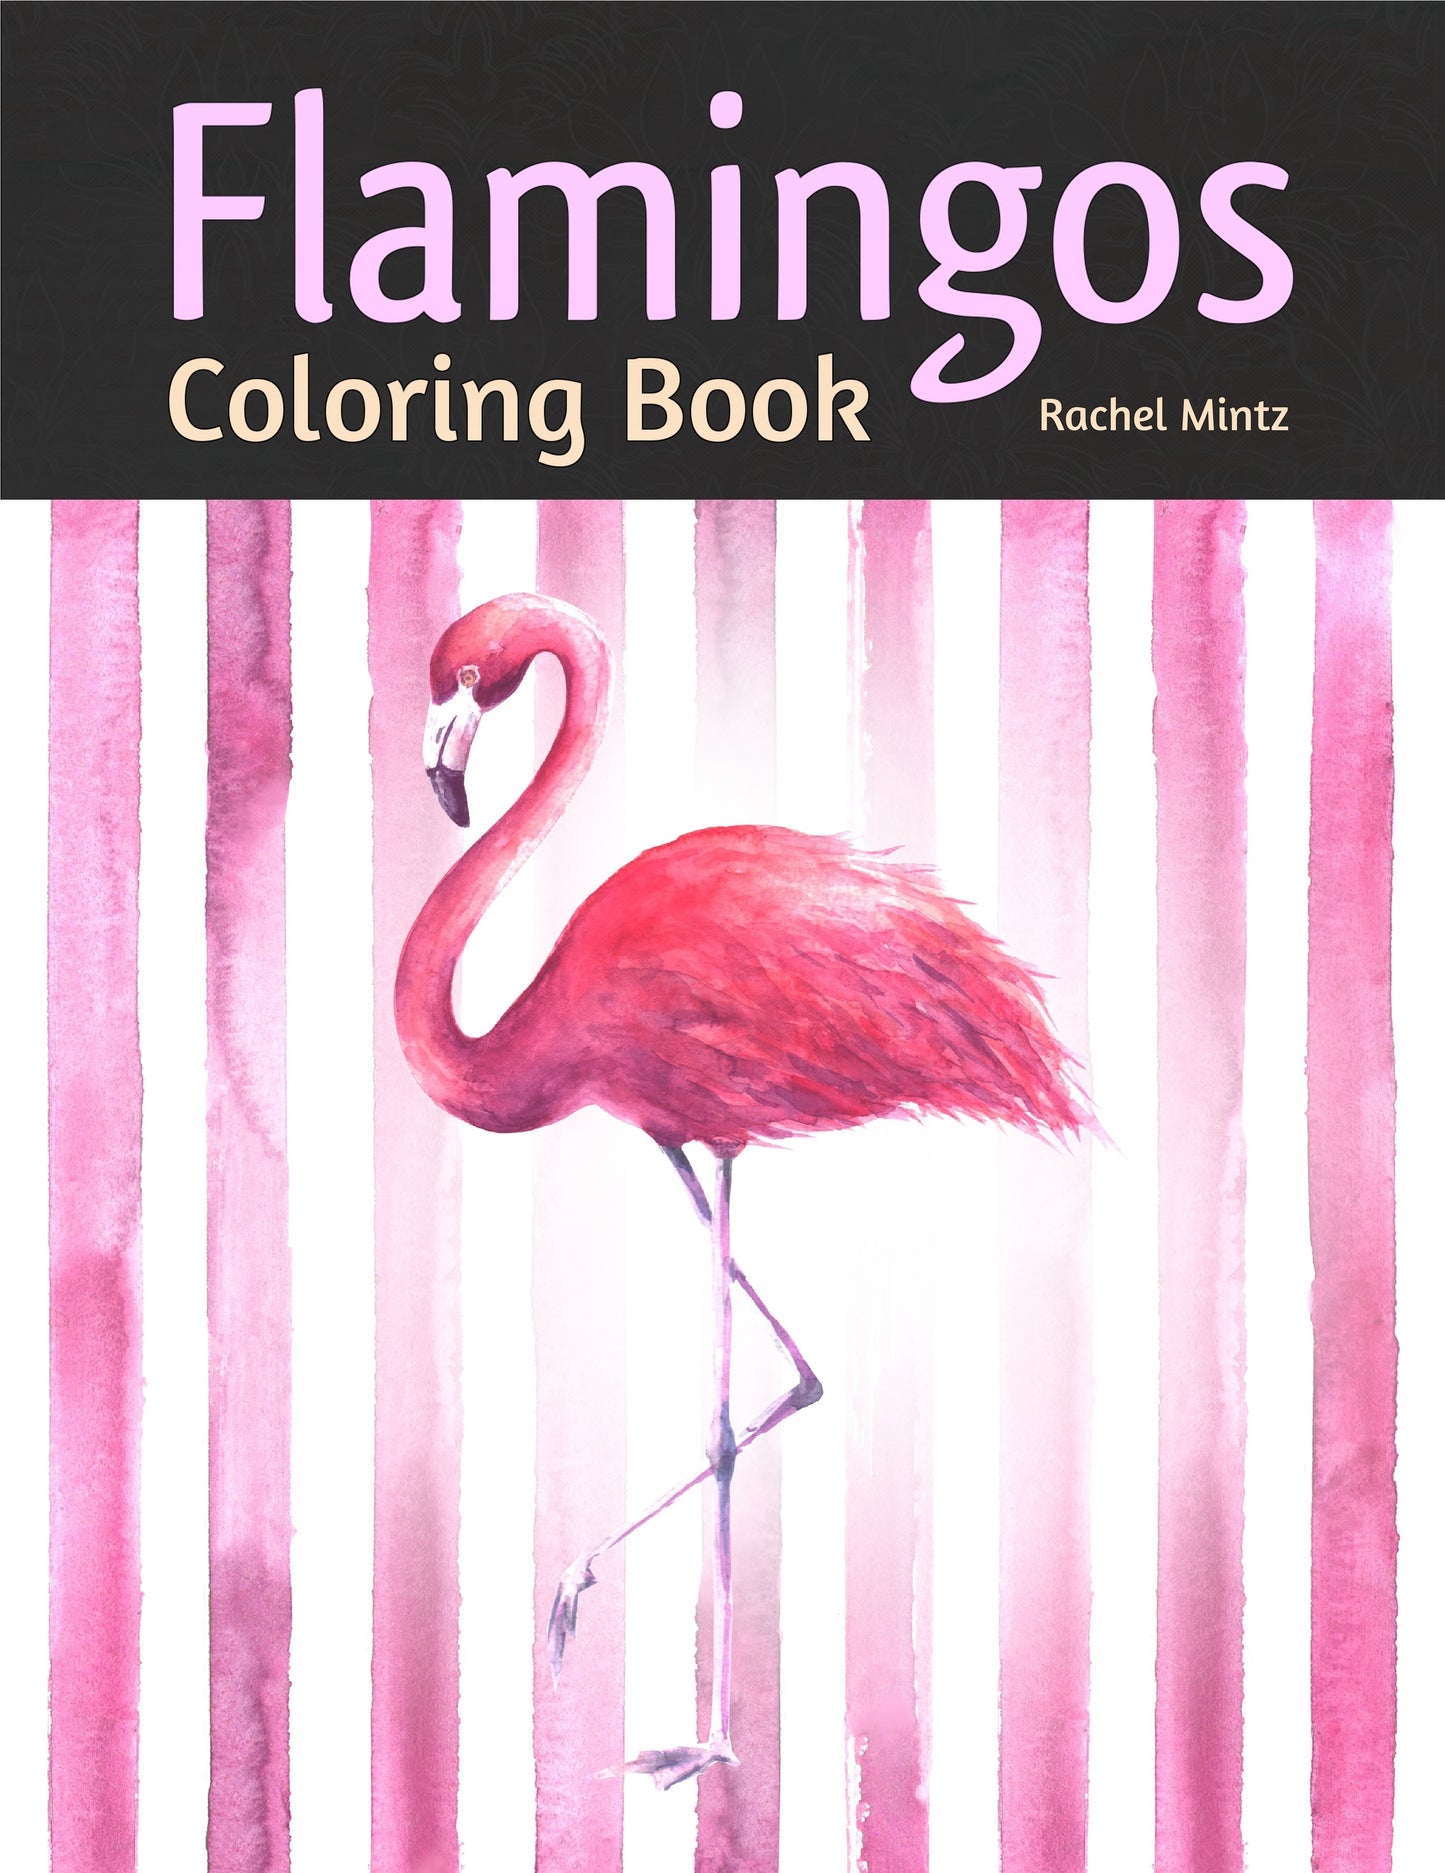 Flamingos Coloring Book - Enjoy Romantic Decorative Coloring Pages Rachel Mintz